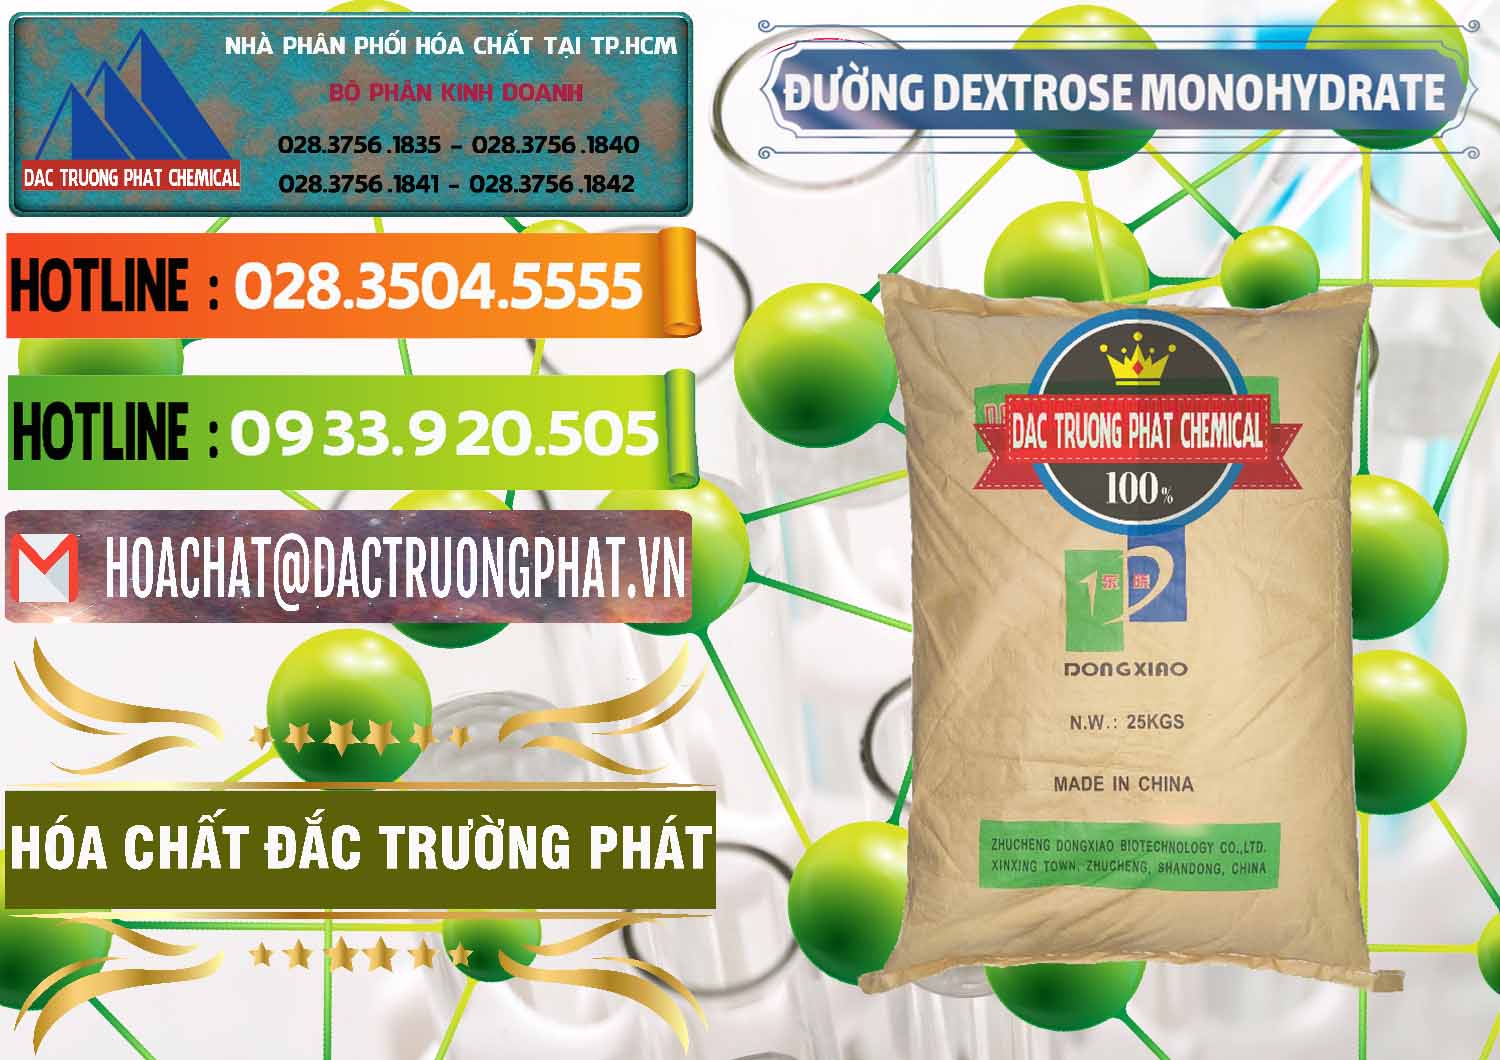 Cty phân phối & bán Đường Dextrose Monohydrate Food Grade Dongxiao Trung Quốc China - 0063 - Công ty chuyên bán - phân phối hóa chất tại TP.HCM - cungcaphoachat.com.vn